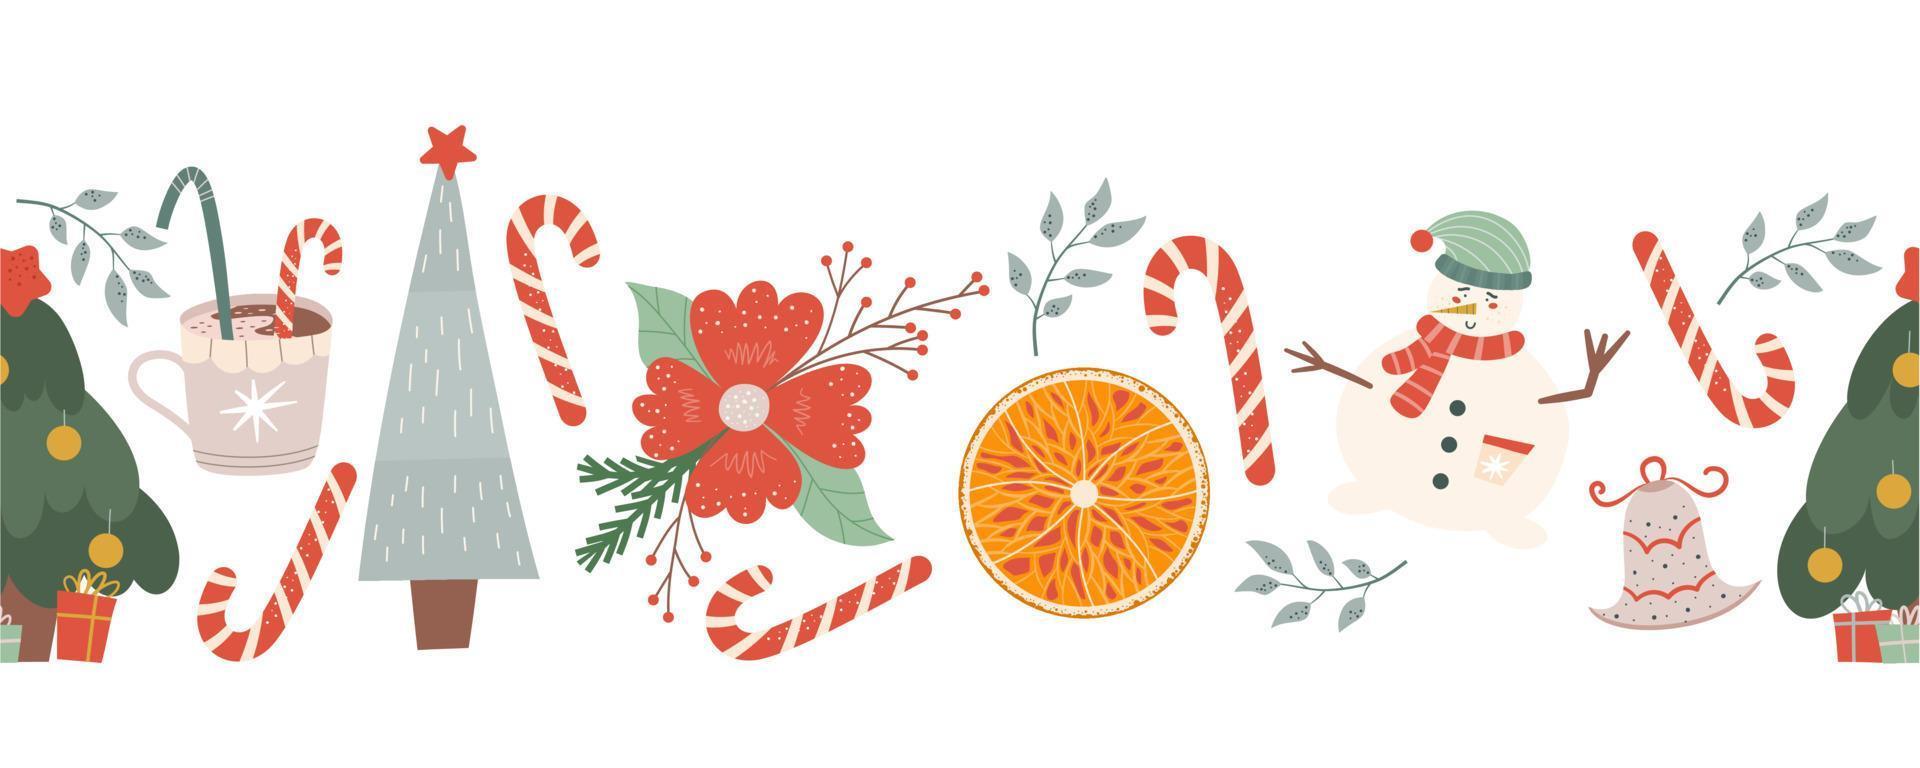 winter naadloze grens met snoepjes, sparren en sneeuwpop, sinaasappel en nieuwjaarsbloem. Kerstmis naadloos patroon. vectorillustratie in vlakke stijl. vector